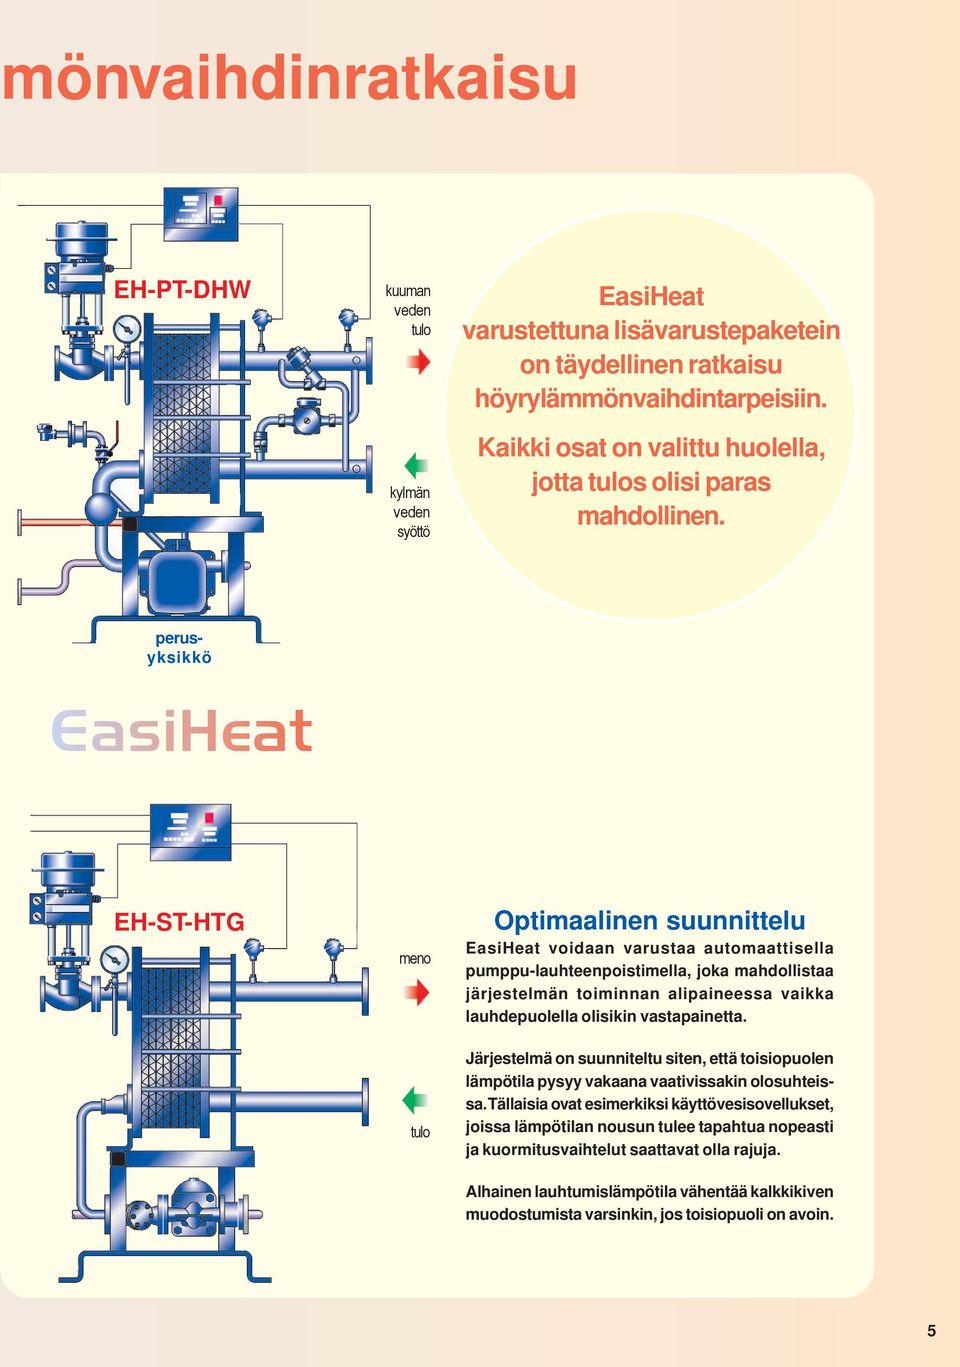 perusyksikkö EH-ST-HTG meno tulo Optimaalinen suunnittelu EasiHeat voidaan varustaa automaattisella pumppu-lauhteenpoistimella, joka mahdollistaa järjestelmän toiminnan alipaineessa vaikka